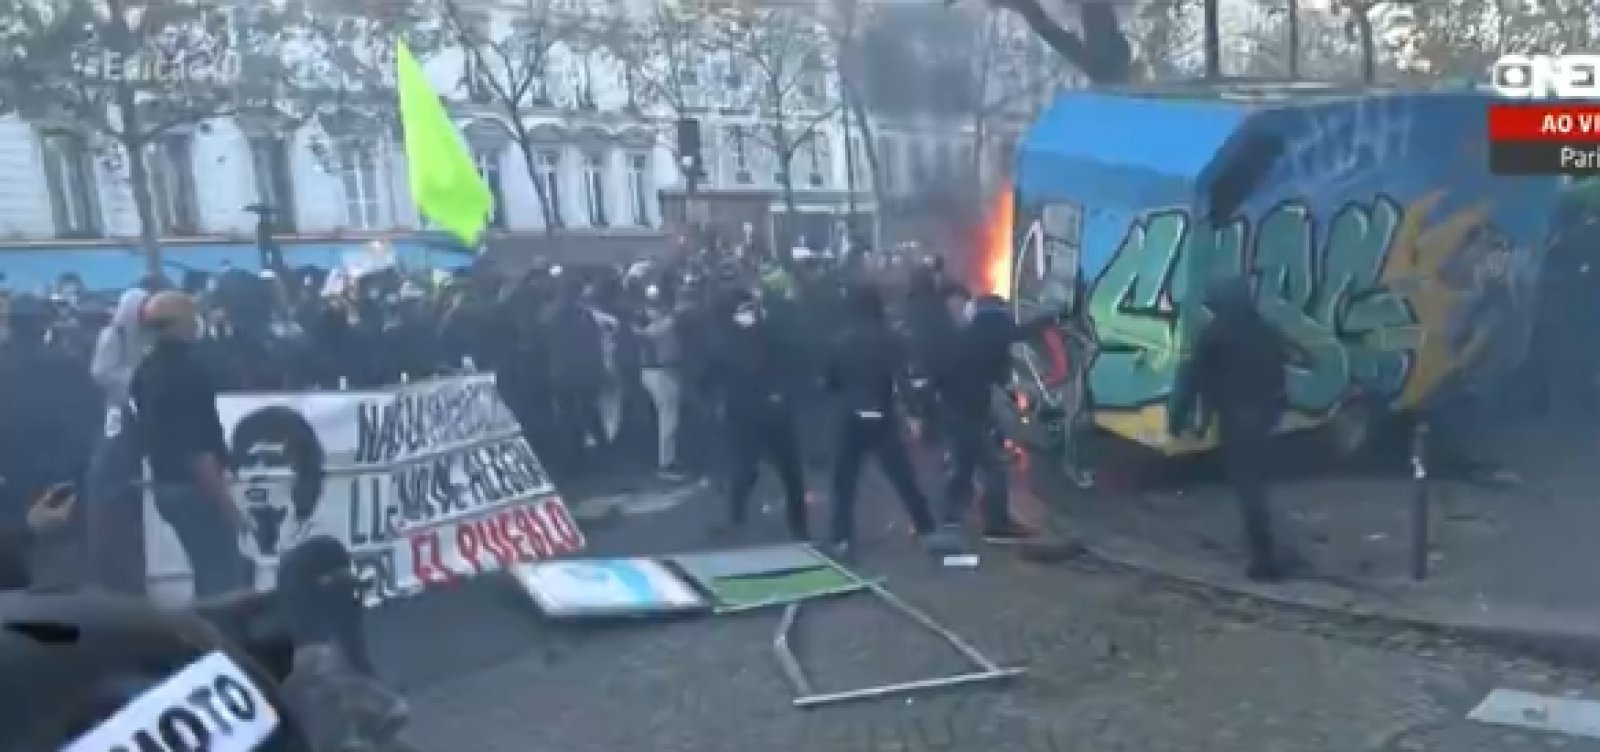 França: milhares protestam contra lei de segurança aprovada semana passada no país